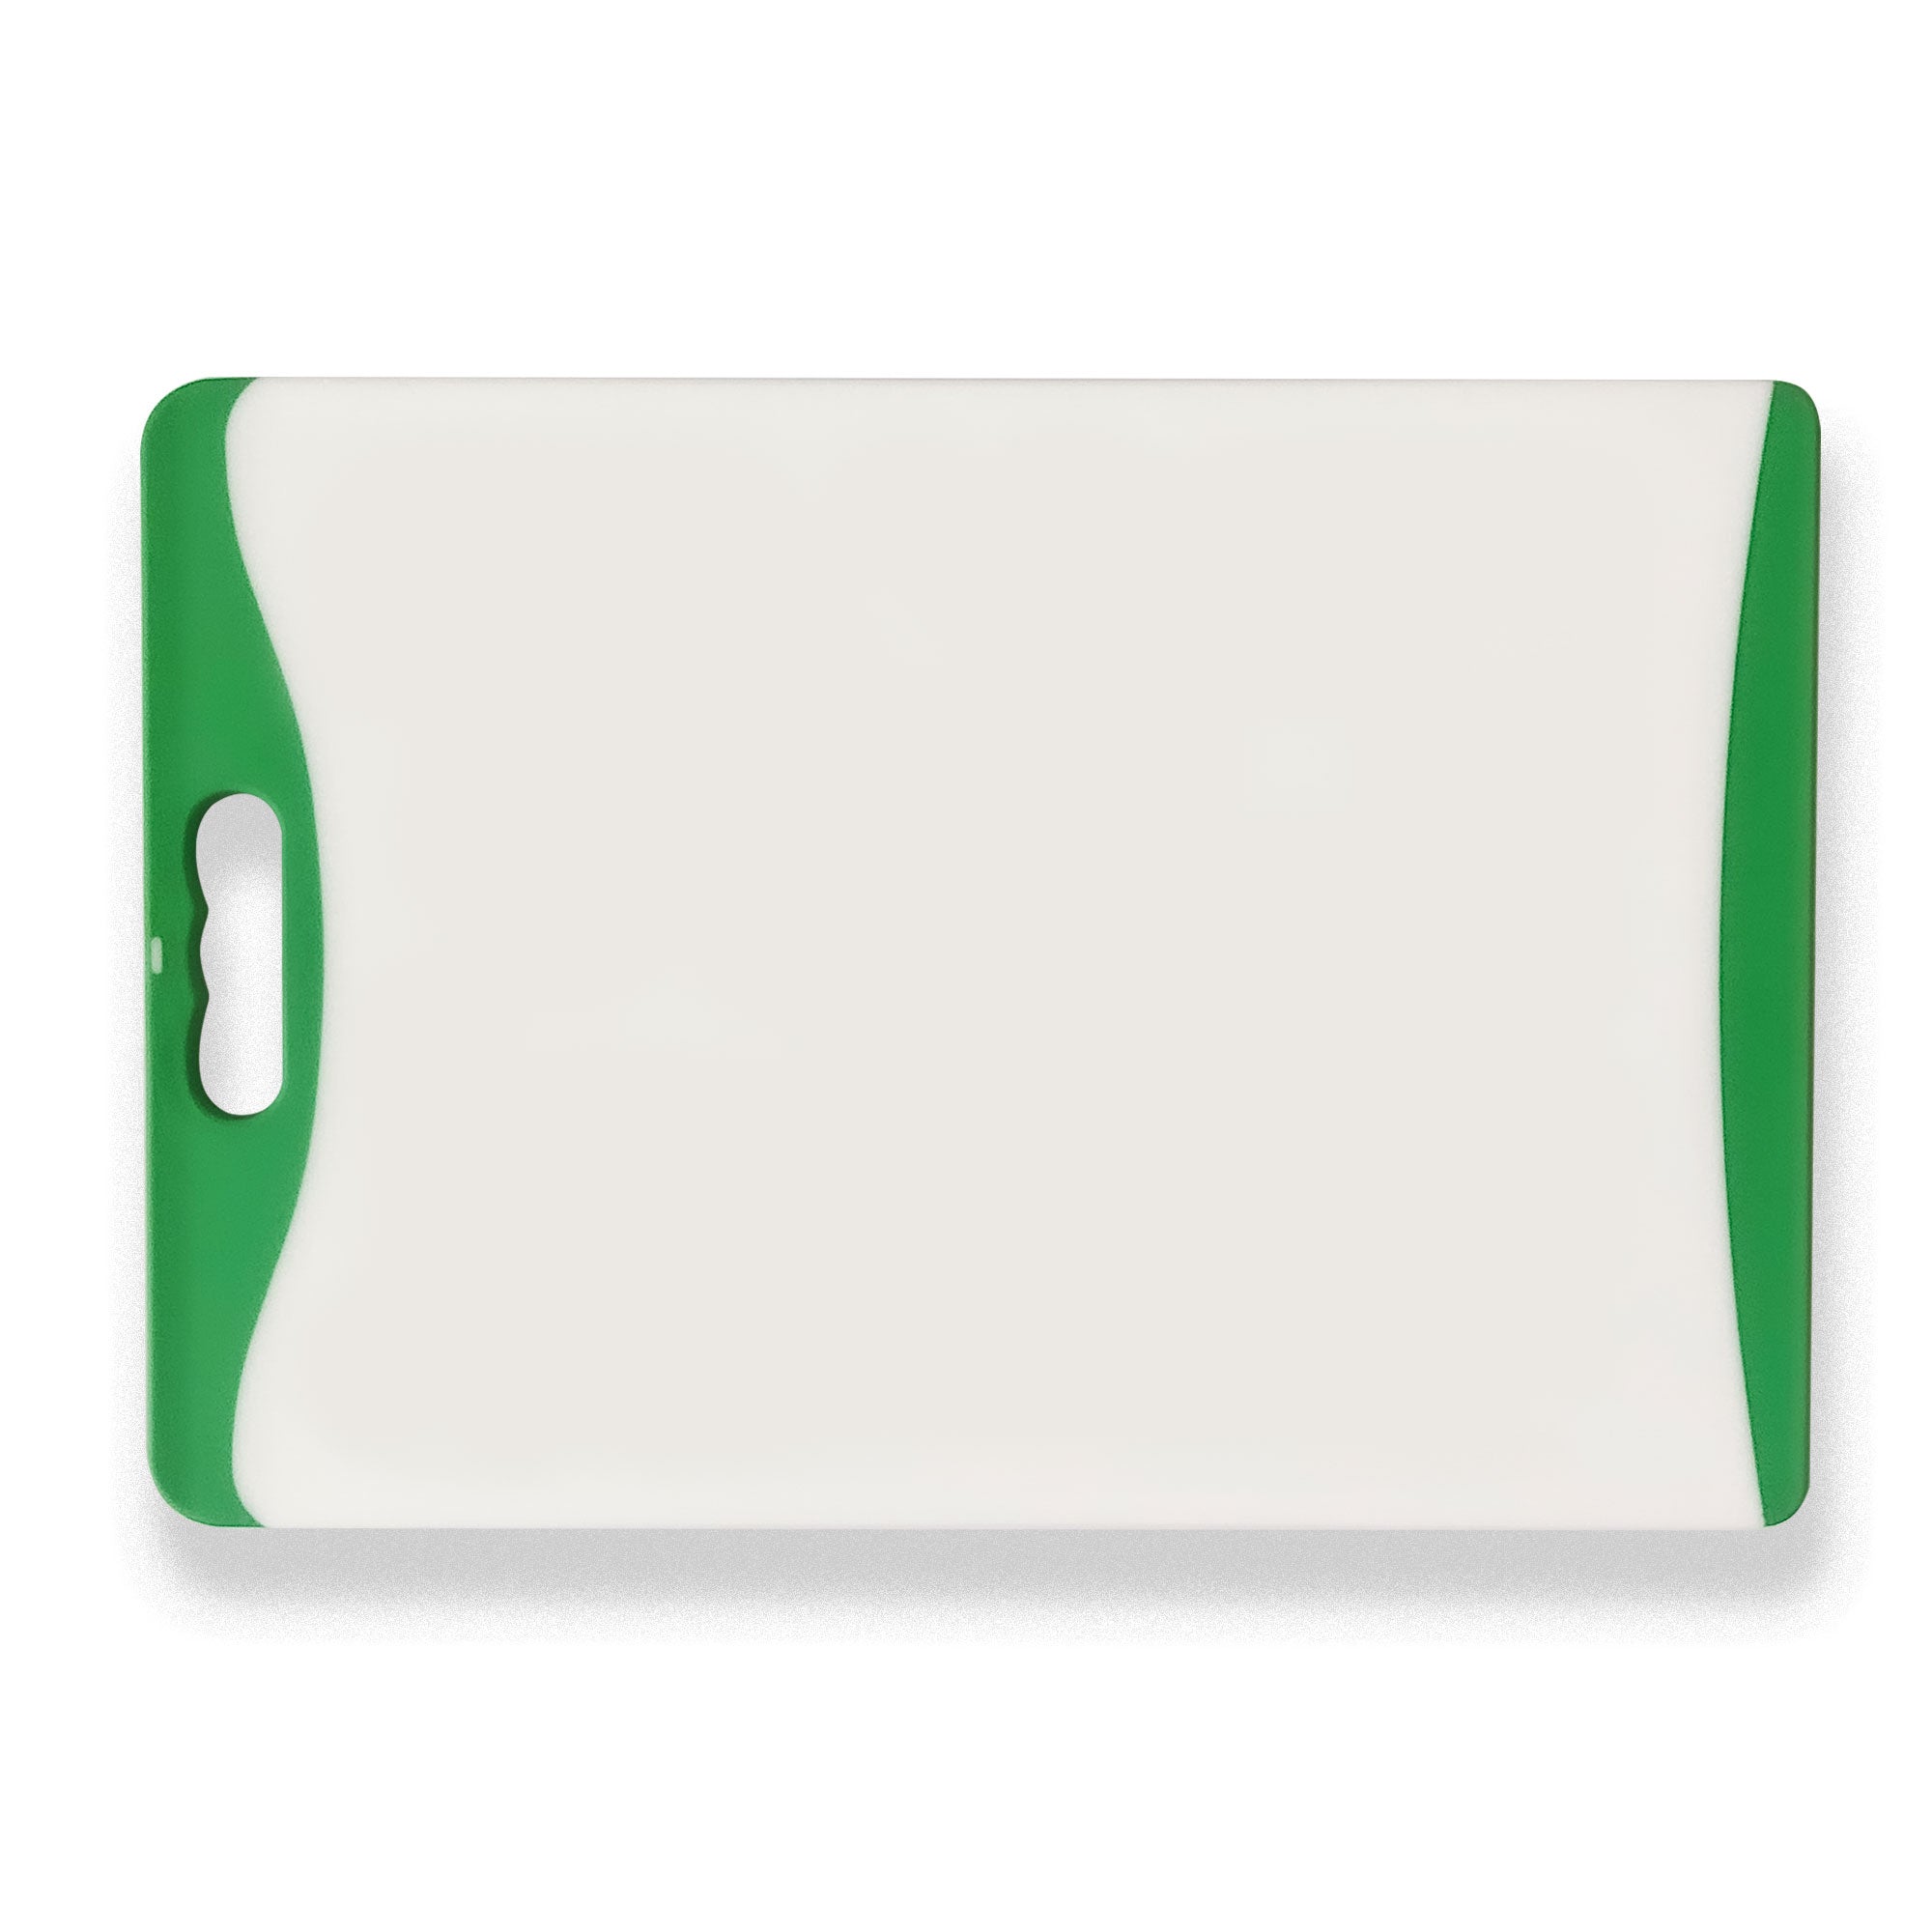 Preserve® Small Plastic Cutting Board in Apple Green, Small